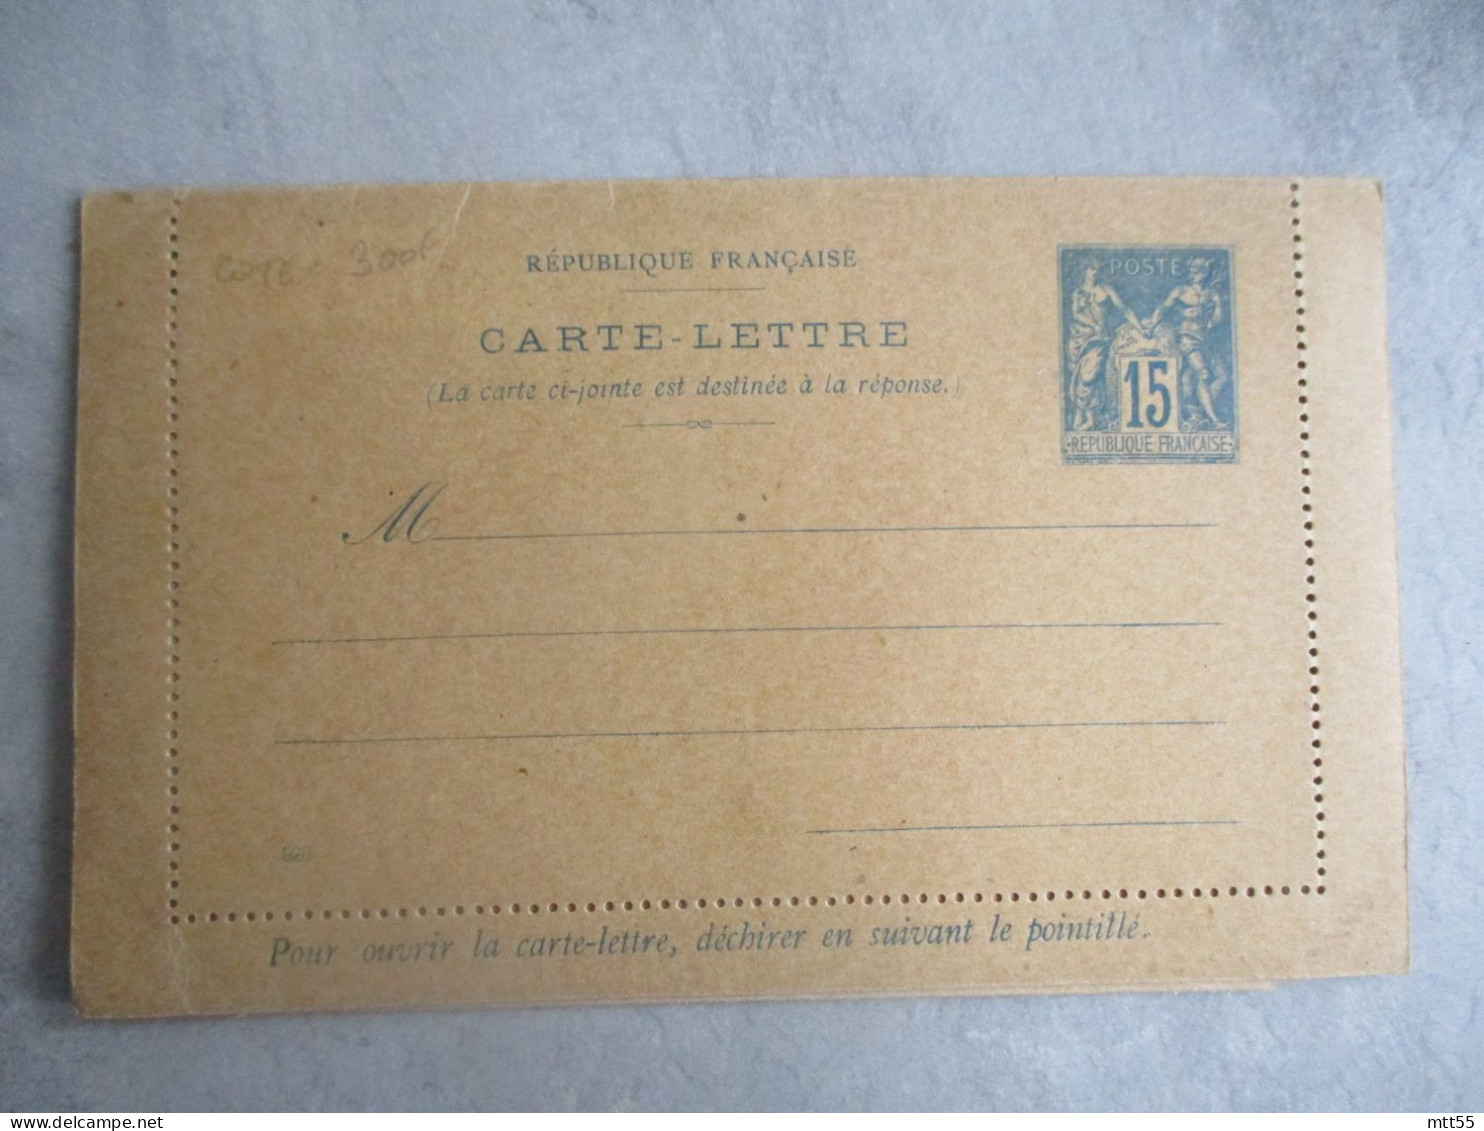 CARTE LETTRE AVEC CARTE REPONSE 15 SAGEENTIER POSTAL - Cartes-lettres